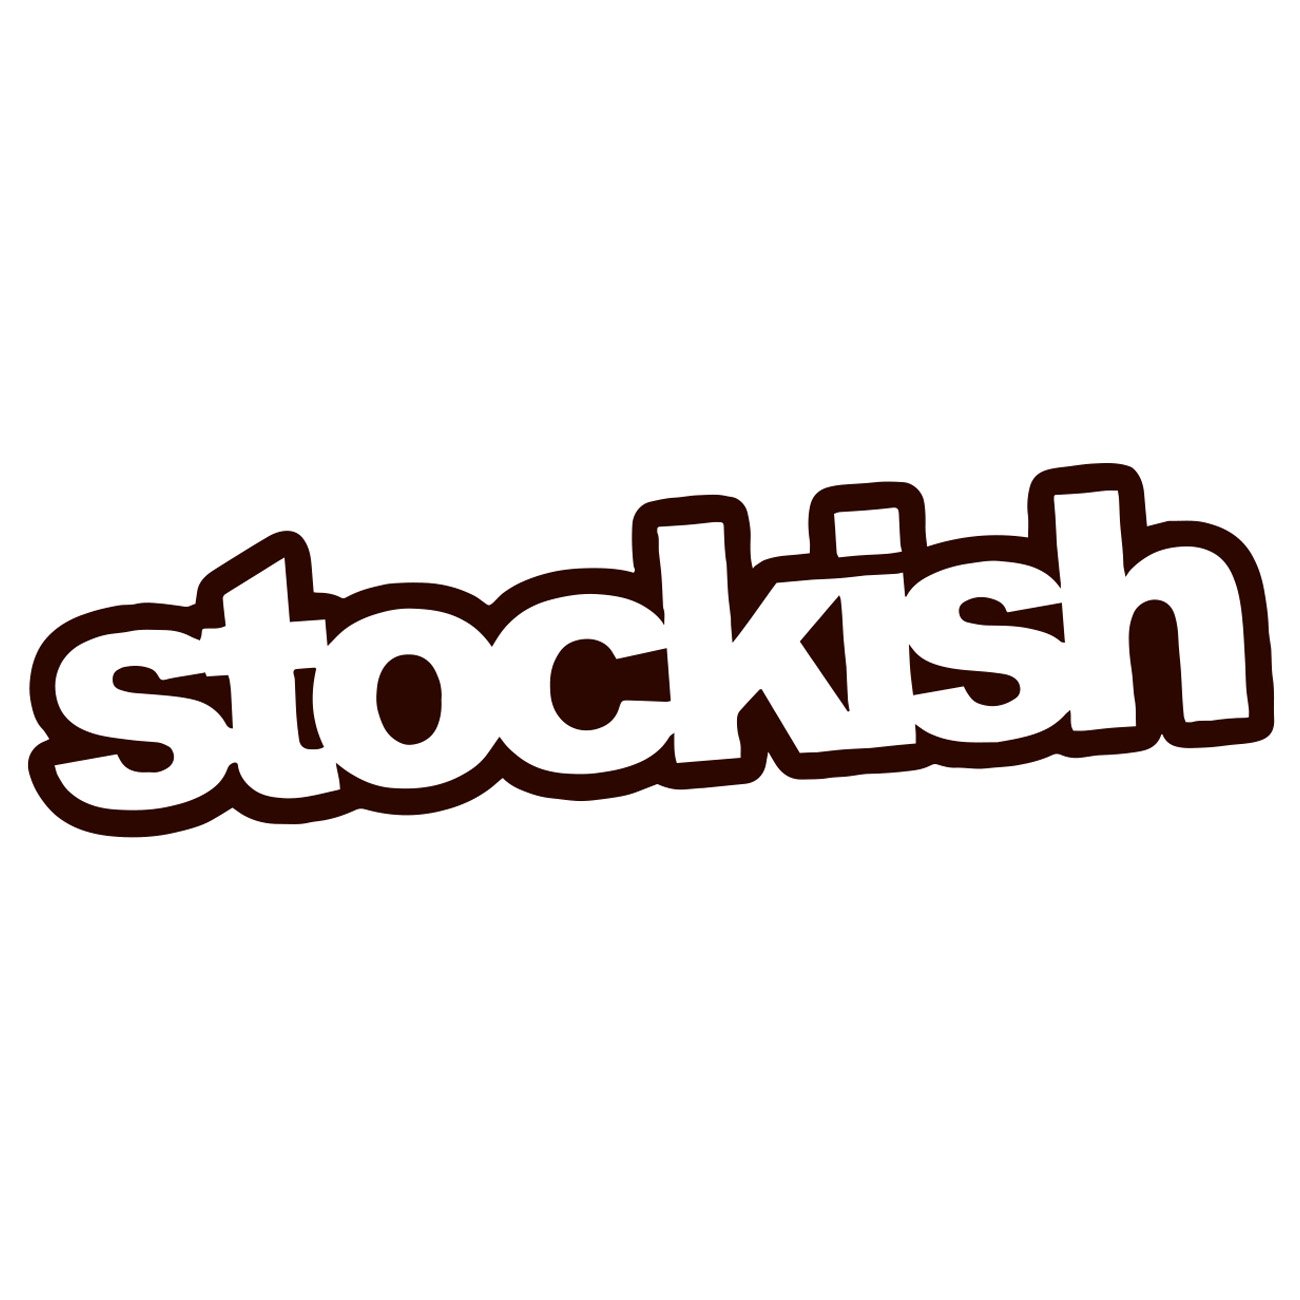 Stockish